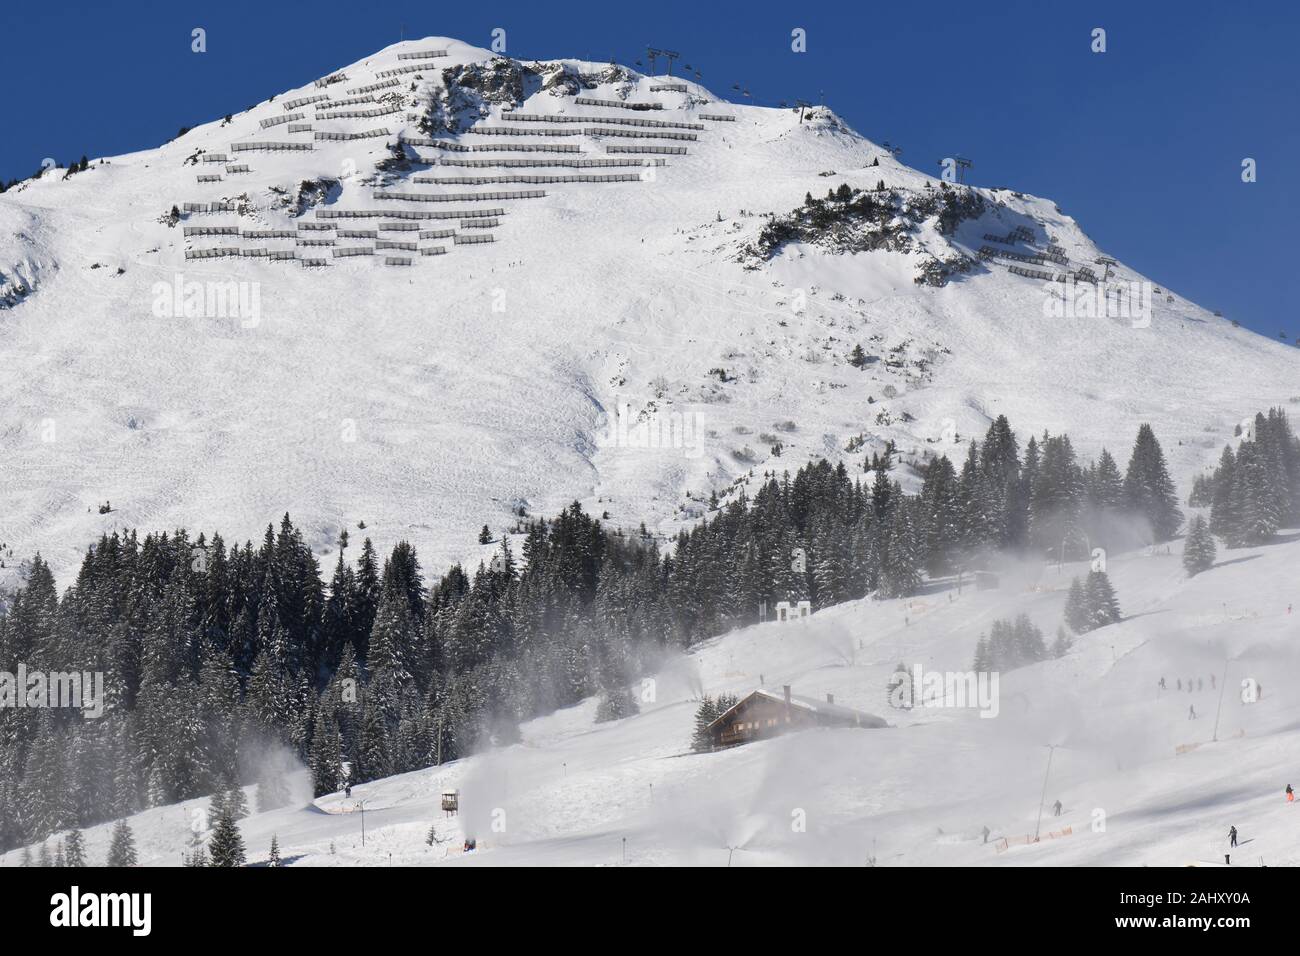 Herrliche Schitage in Lech und Zürs am Arlberg im Winter 2010/20 mit Blick auf das Kriegerhorn, und den darauf führenden Sessellift Stock Photo